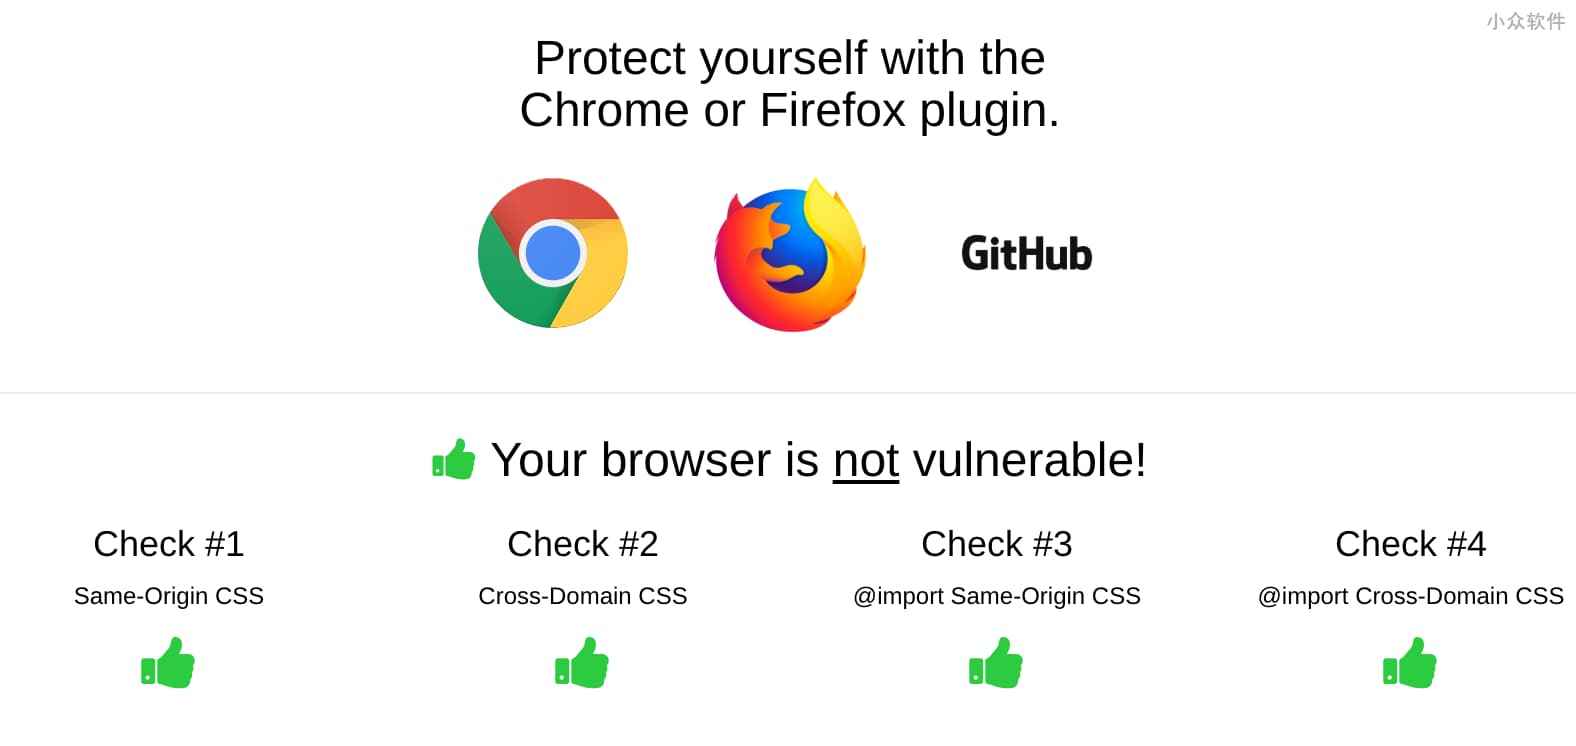 防密码泄漏，这款 Chrome/Firefox 扩展能防止 CSS Exfil 攻击[附测试] 2